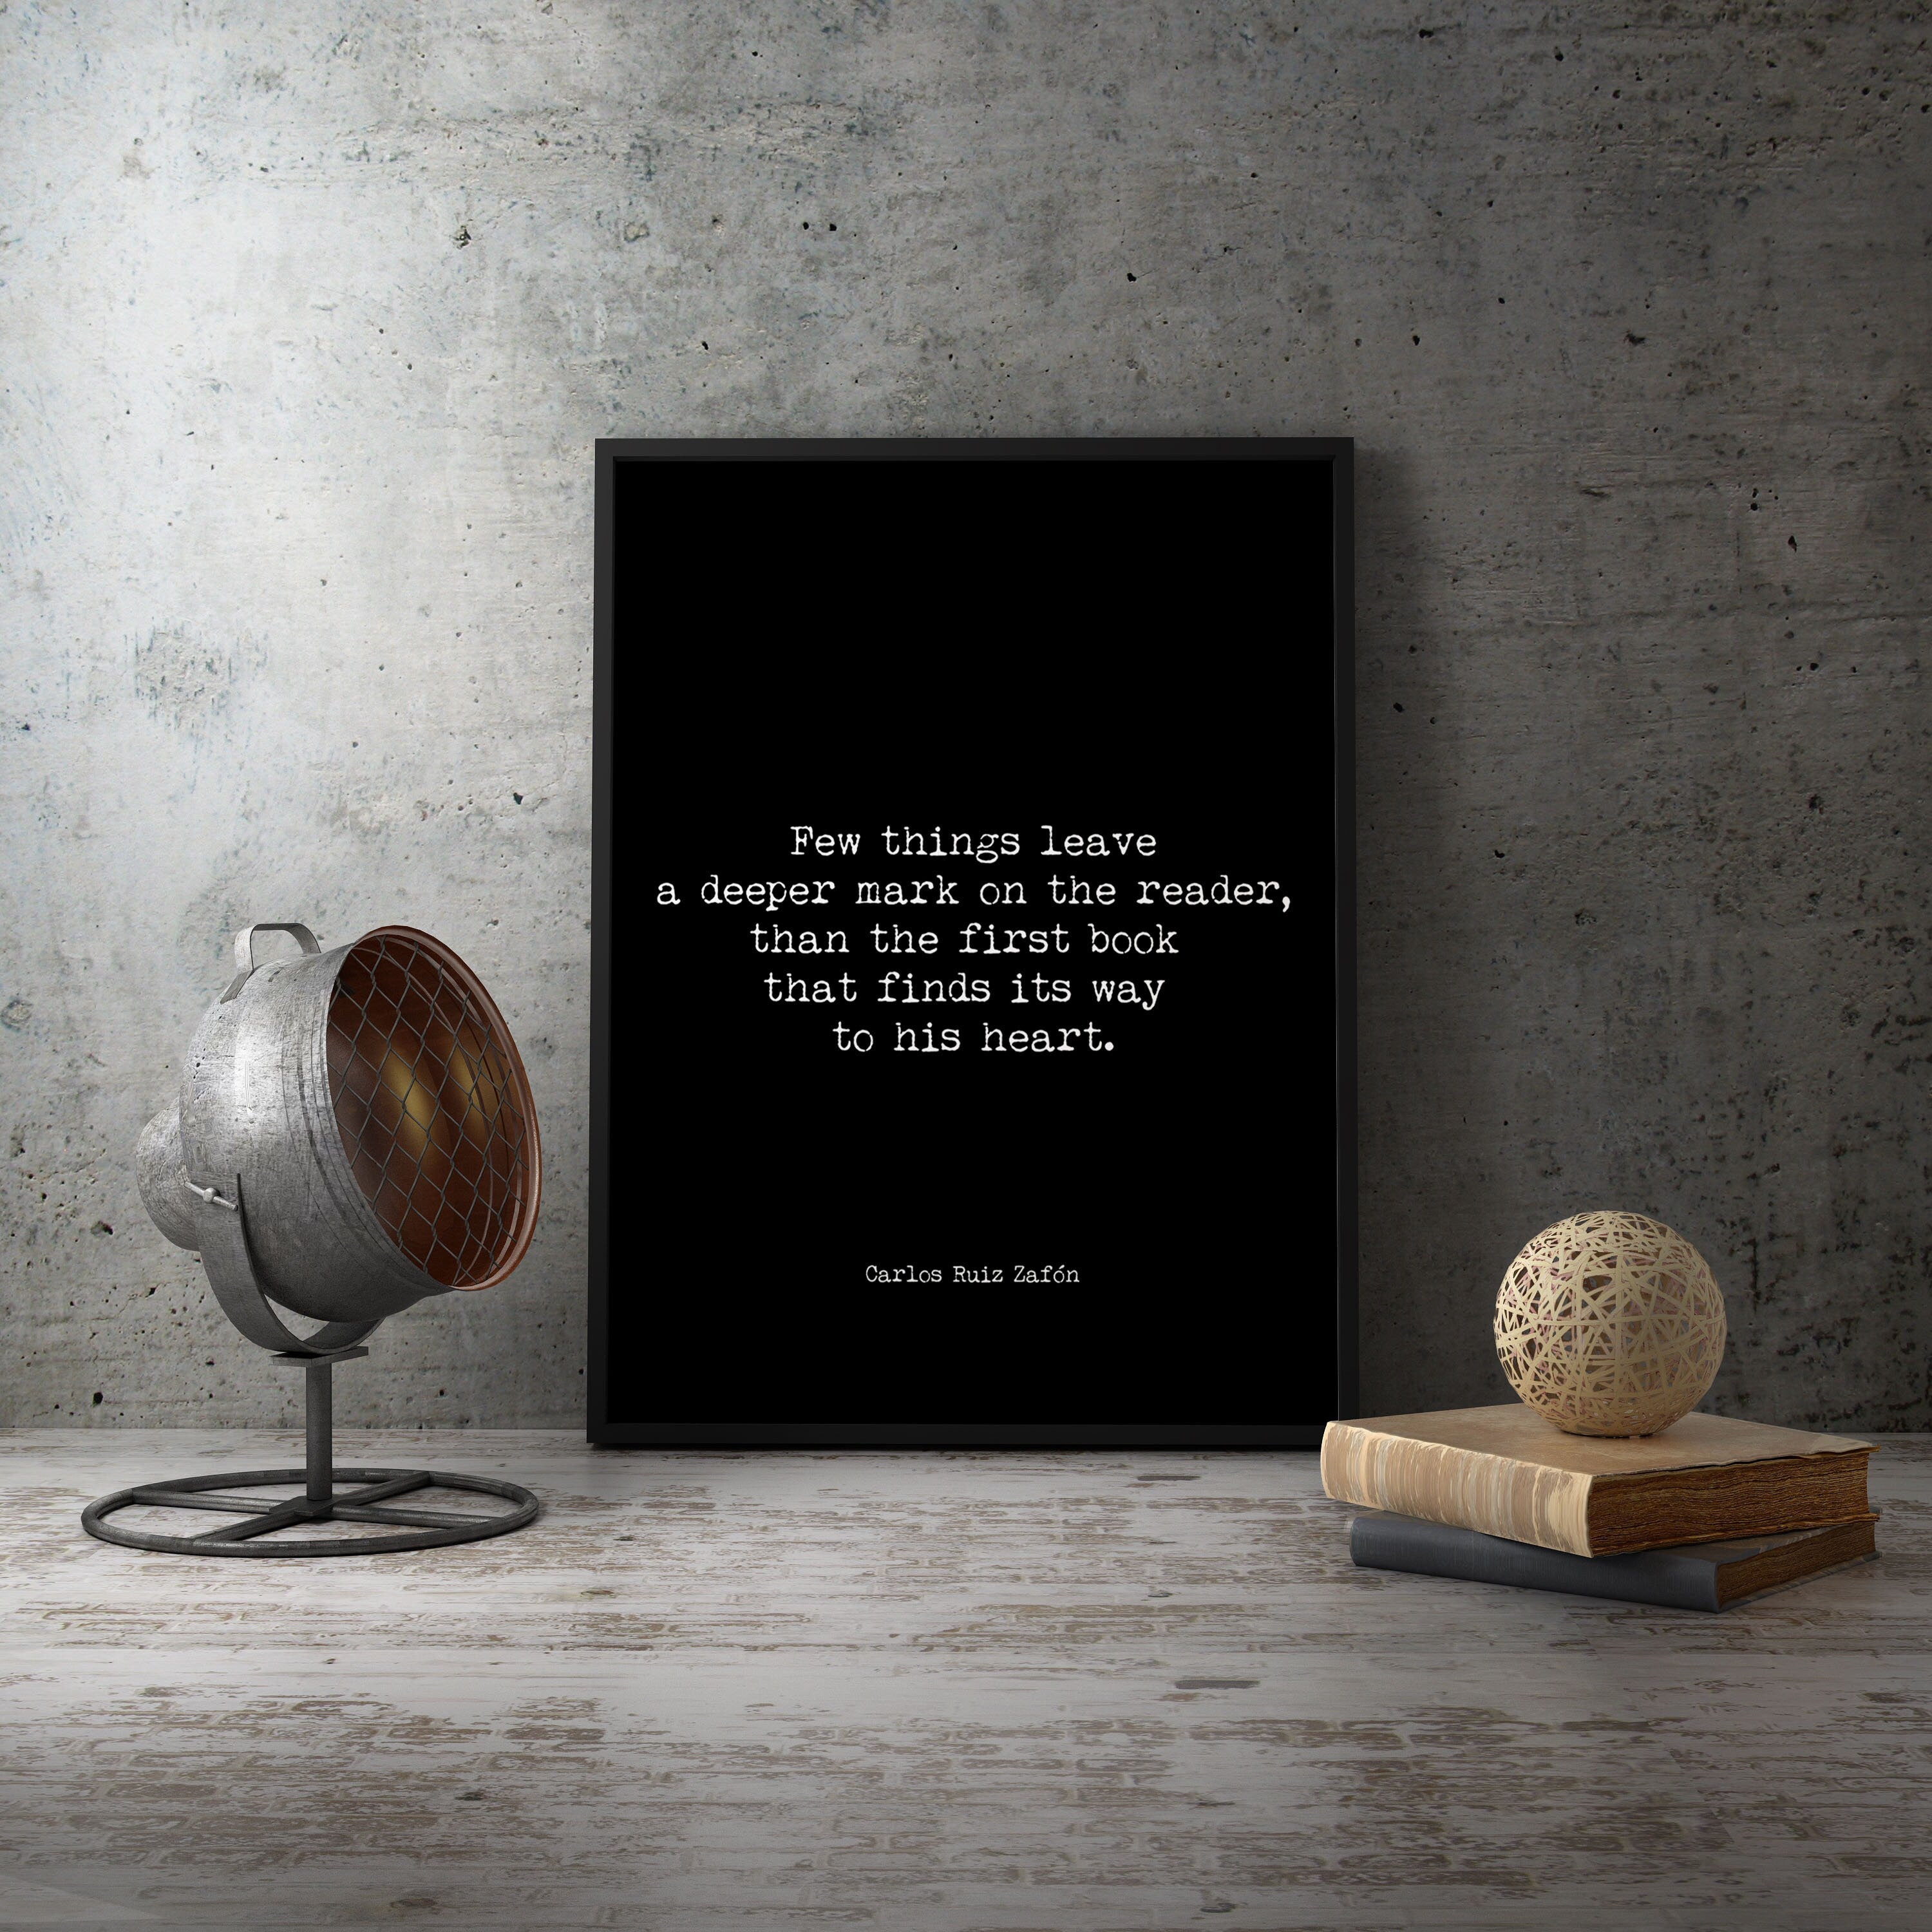 Carlos Ruiz Zafon quote print, black & white art from Book Quote Decor